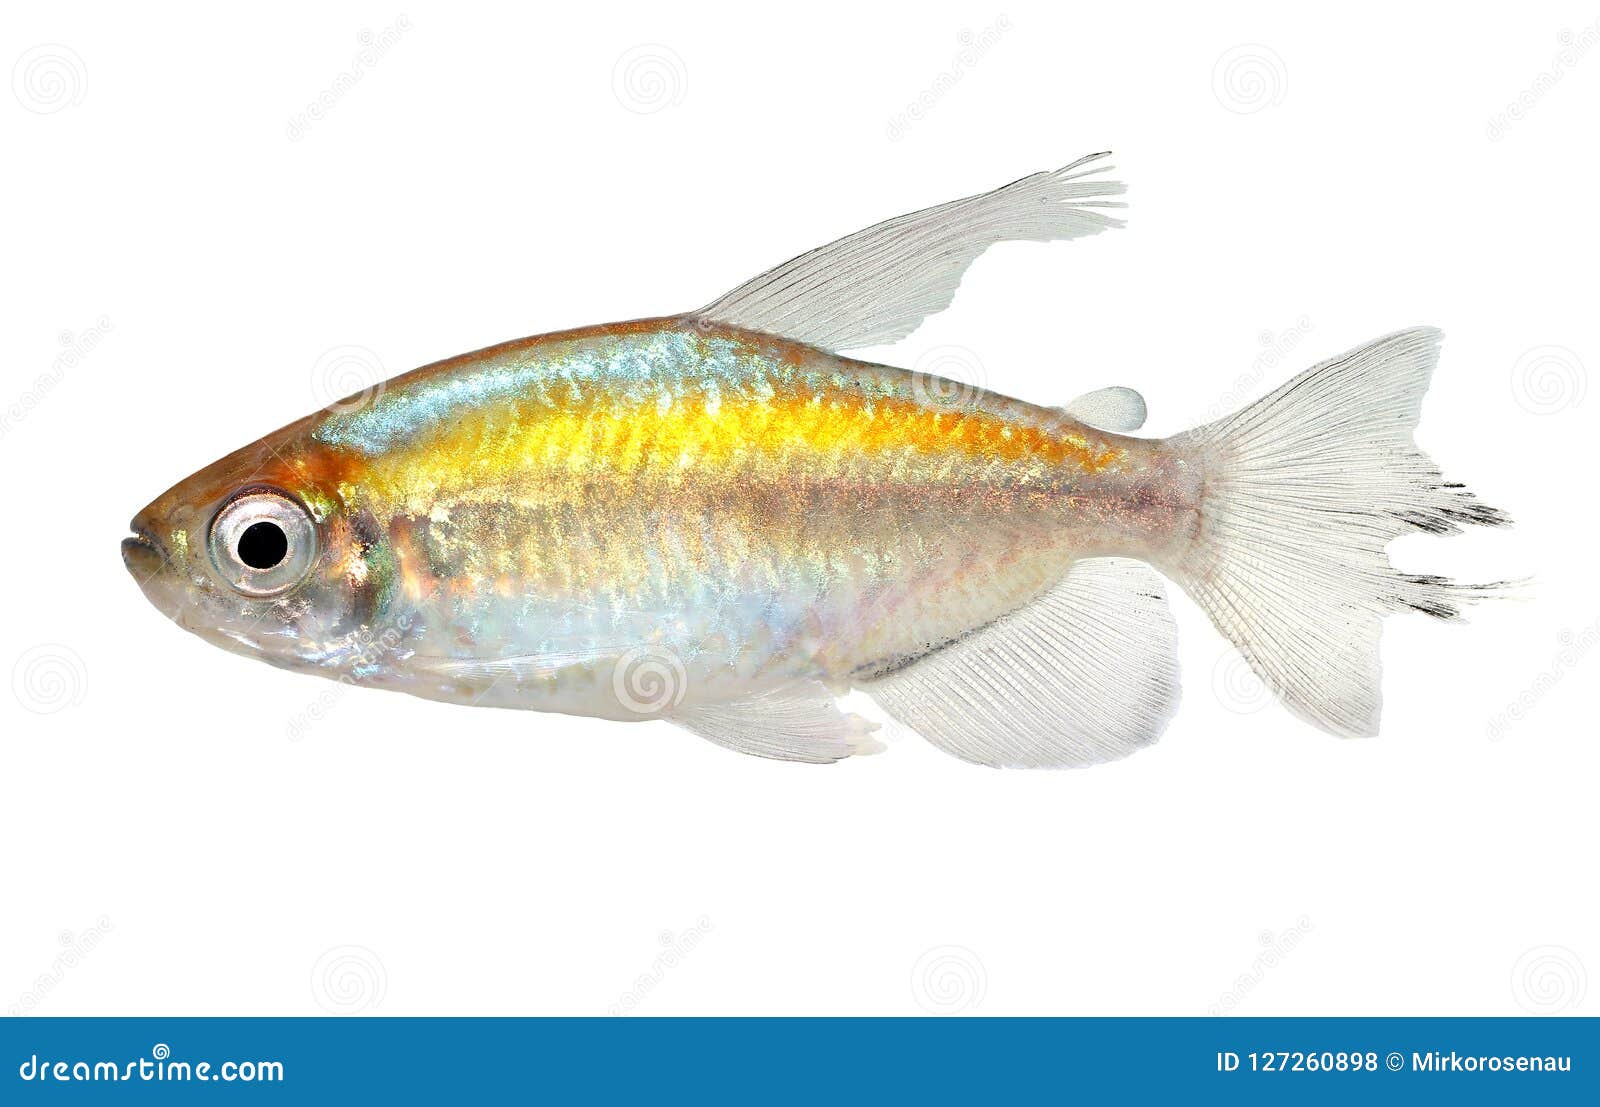 congo tetra aquarium fish phenacogrammus interruptus